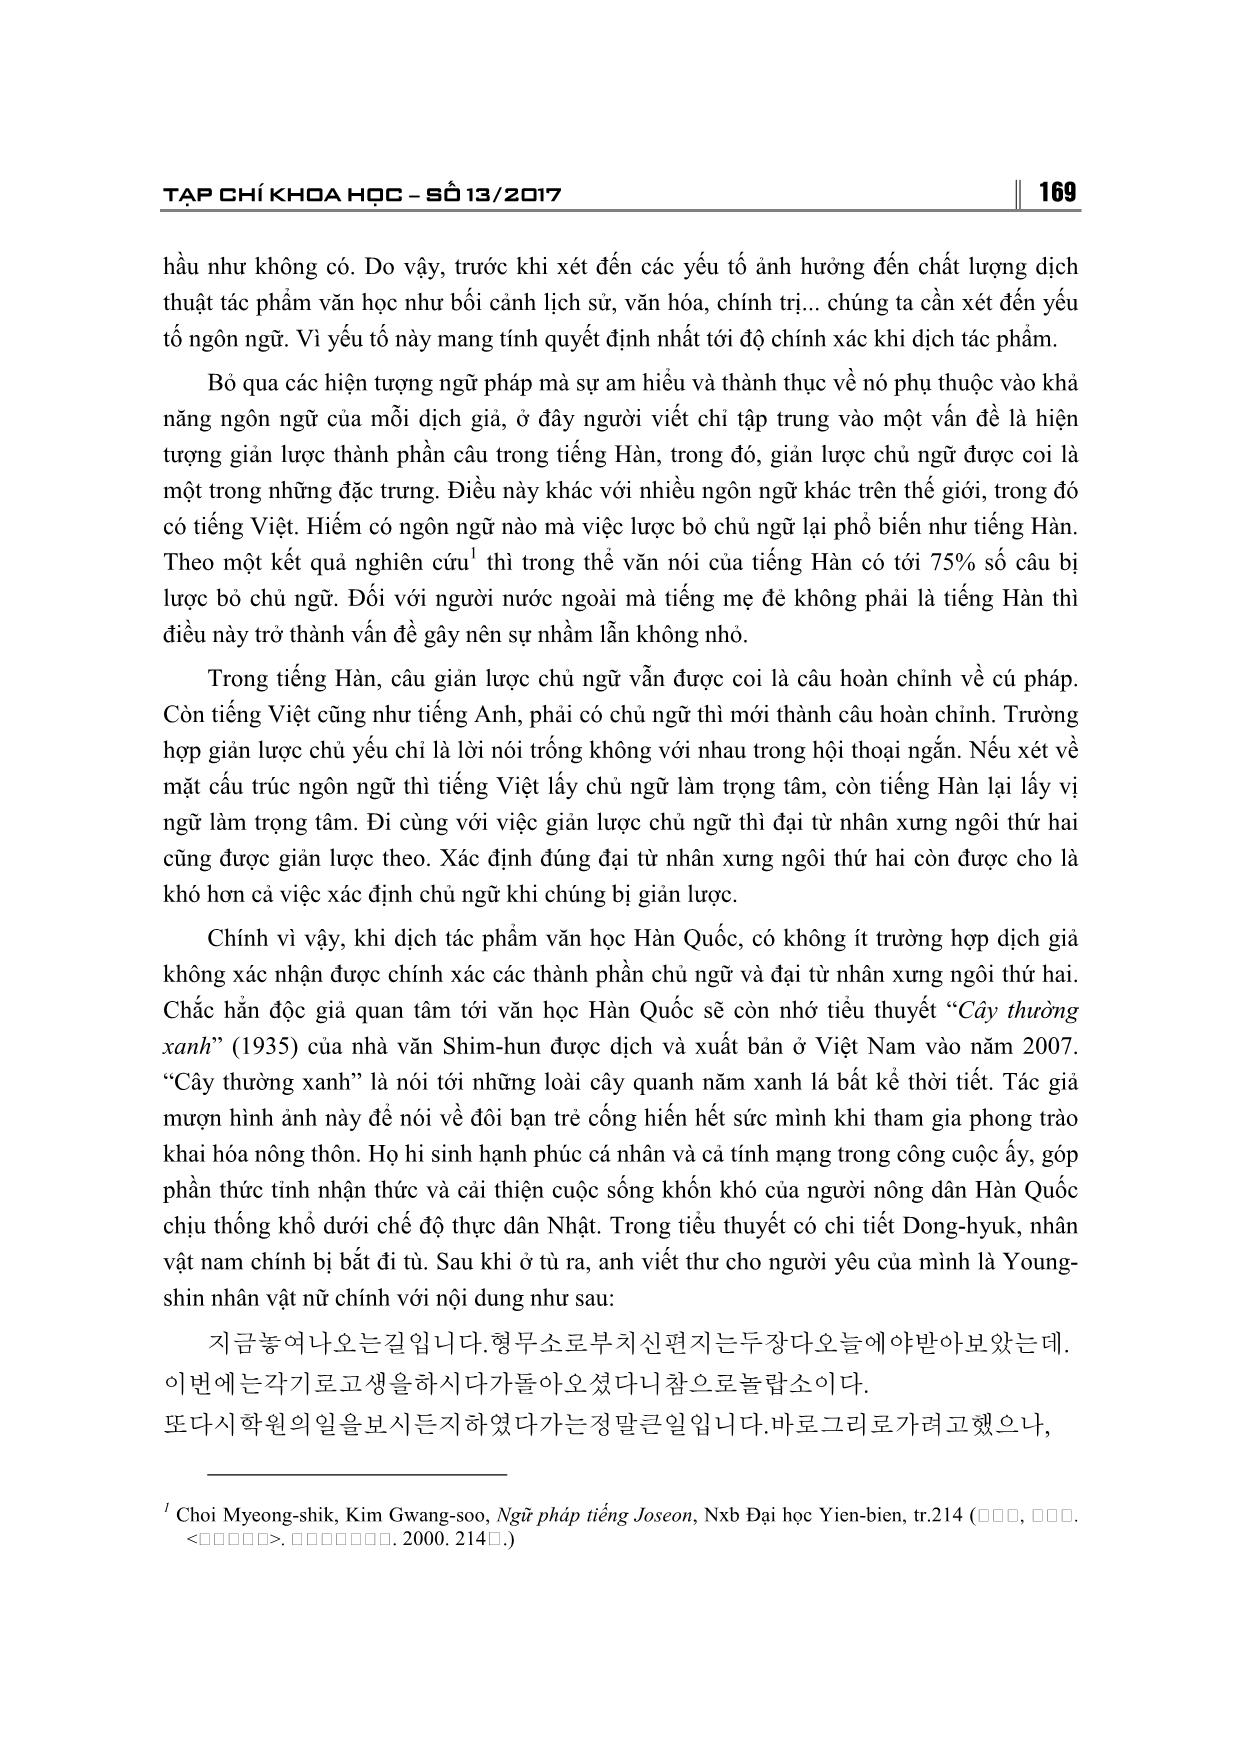 Một số hạn chế phát sinh từ yếu tố ngôn ngữ khi dịch tác phẩm văn học Hàn Quốc sang Tiếng Việt trang 3